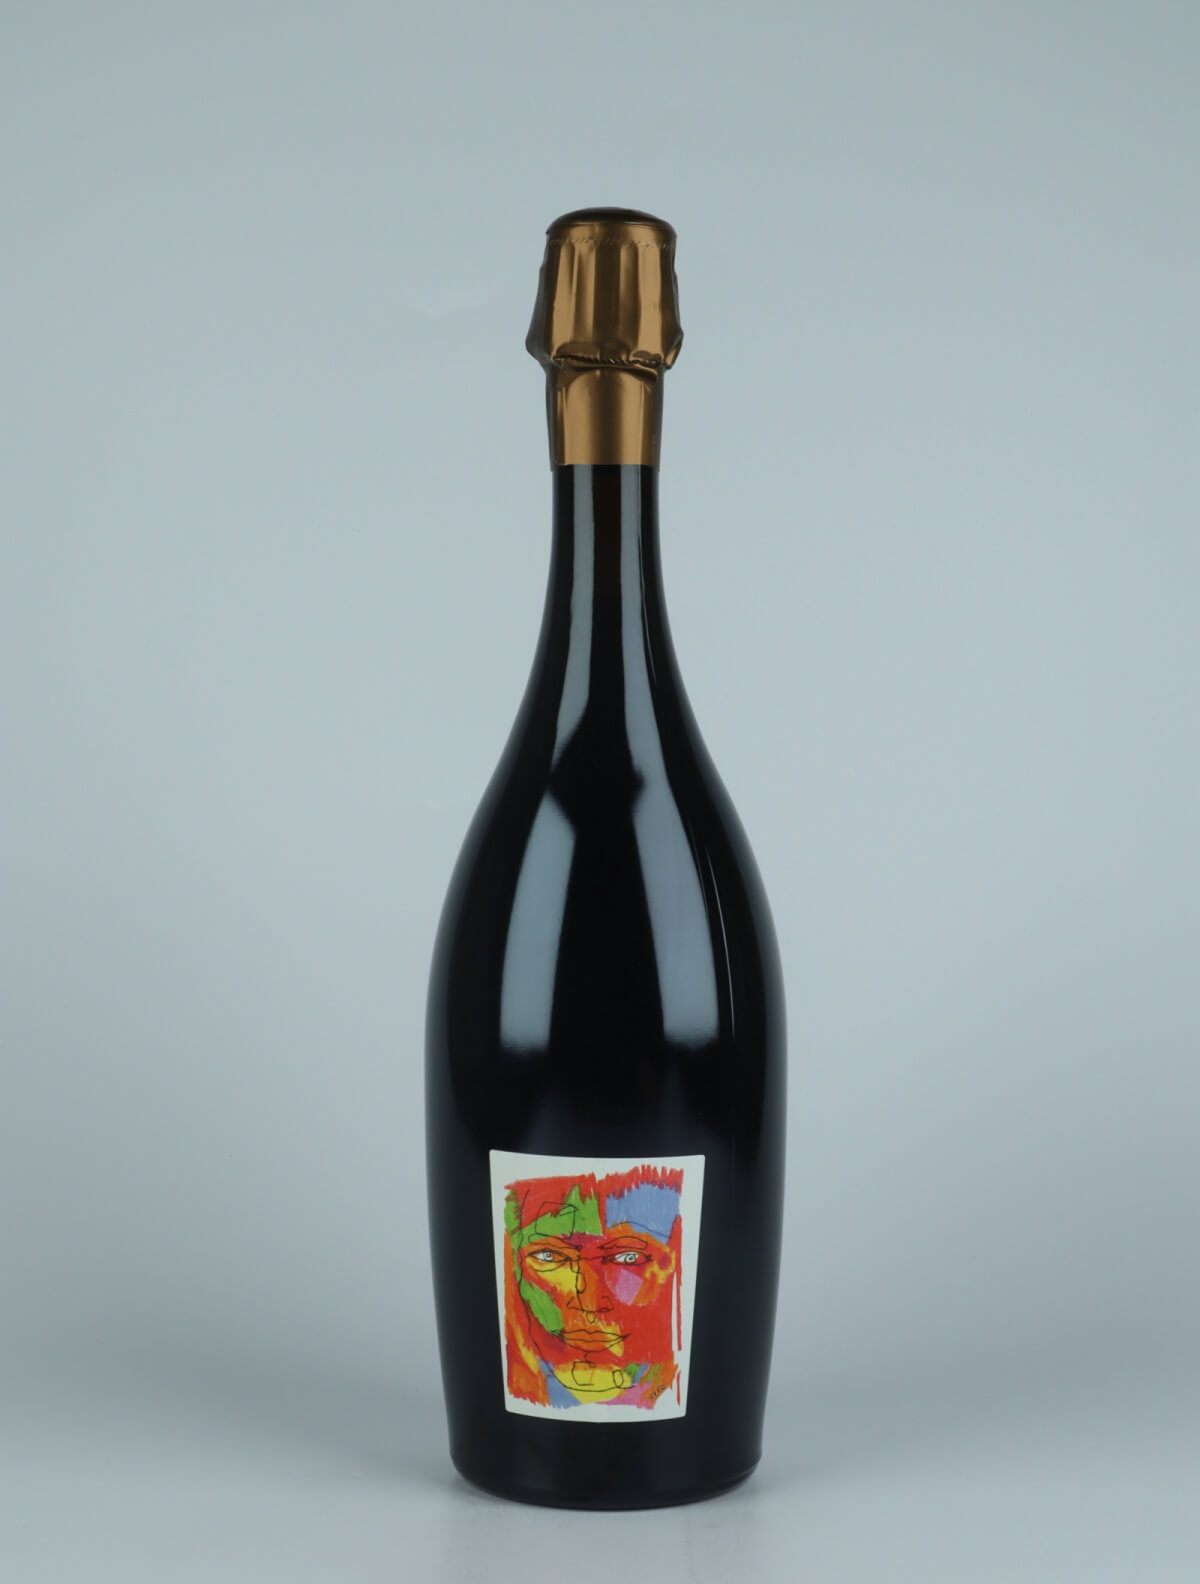 A bottle 2015 Logos Rosé de Saignée - Les Paquis - Brut Nature Sparkling from Stroebel, Champagne in France